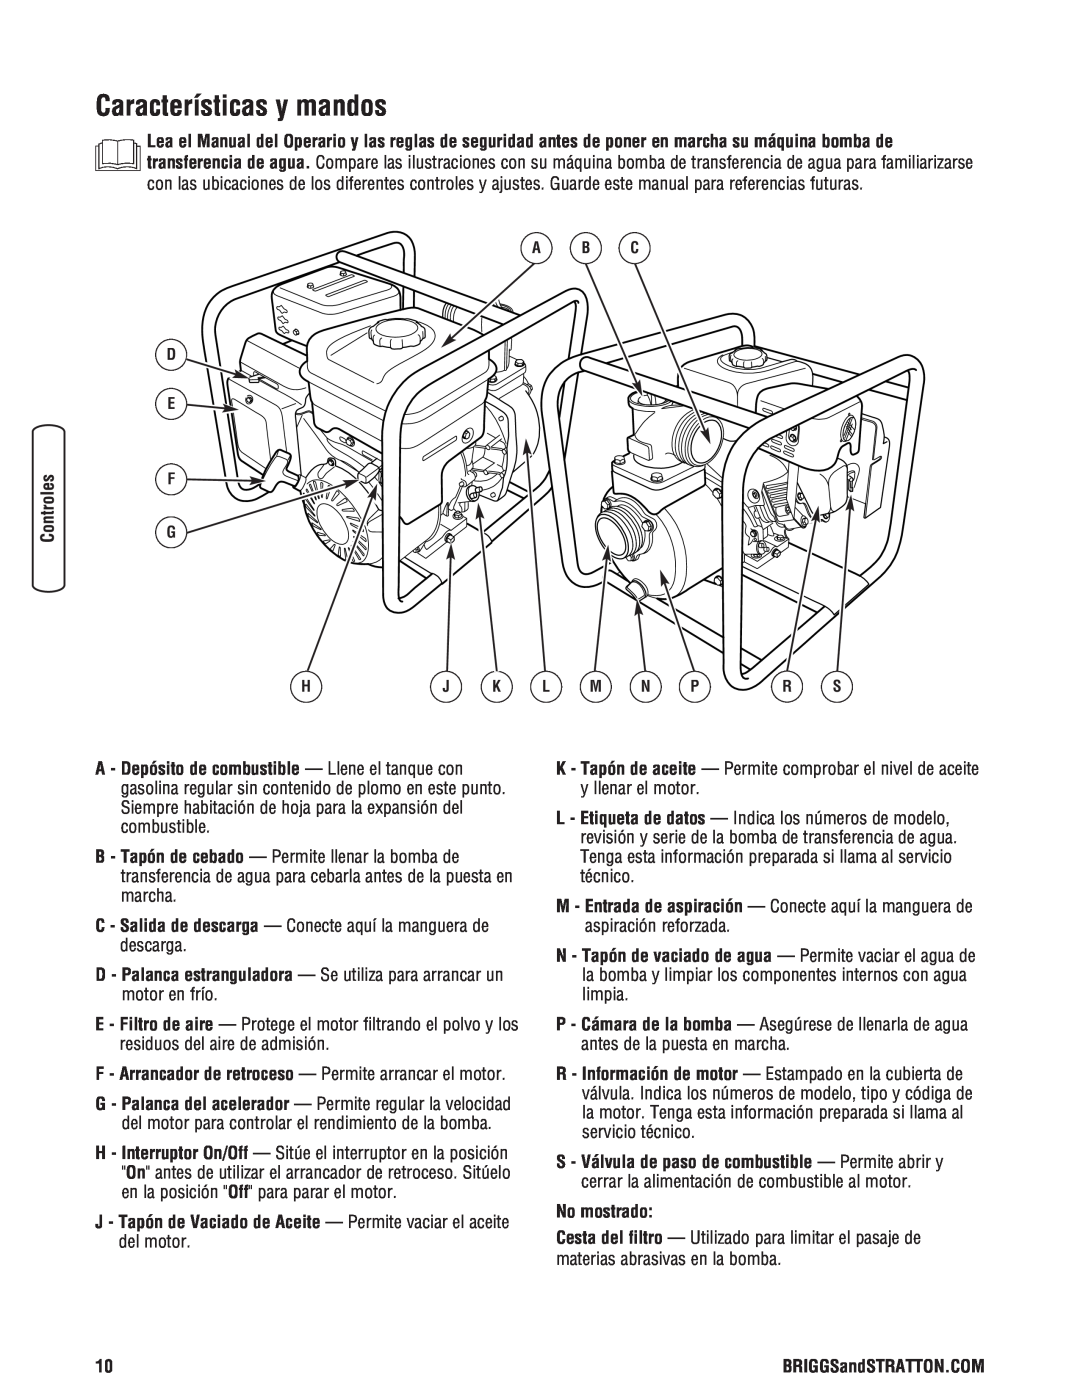 Briggs & Stratton Water Transfer Pump Características y mandos, F - Arrancador de retroceso - Permite arrancar el motor 